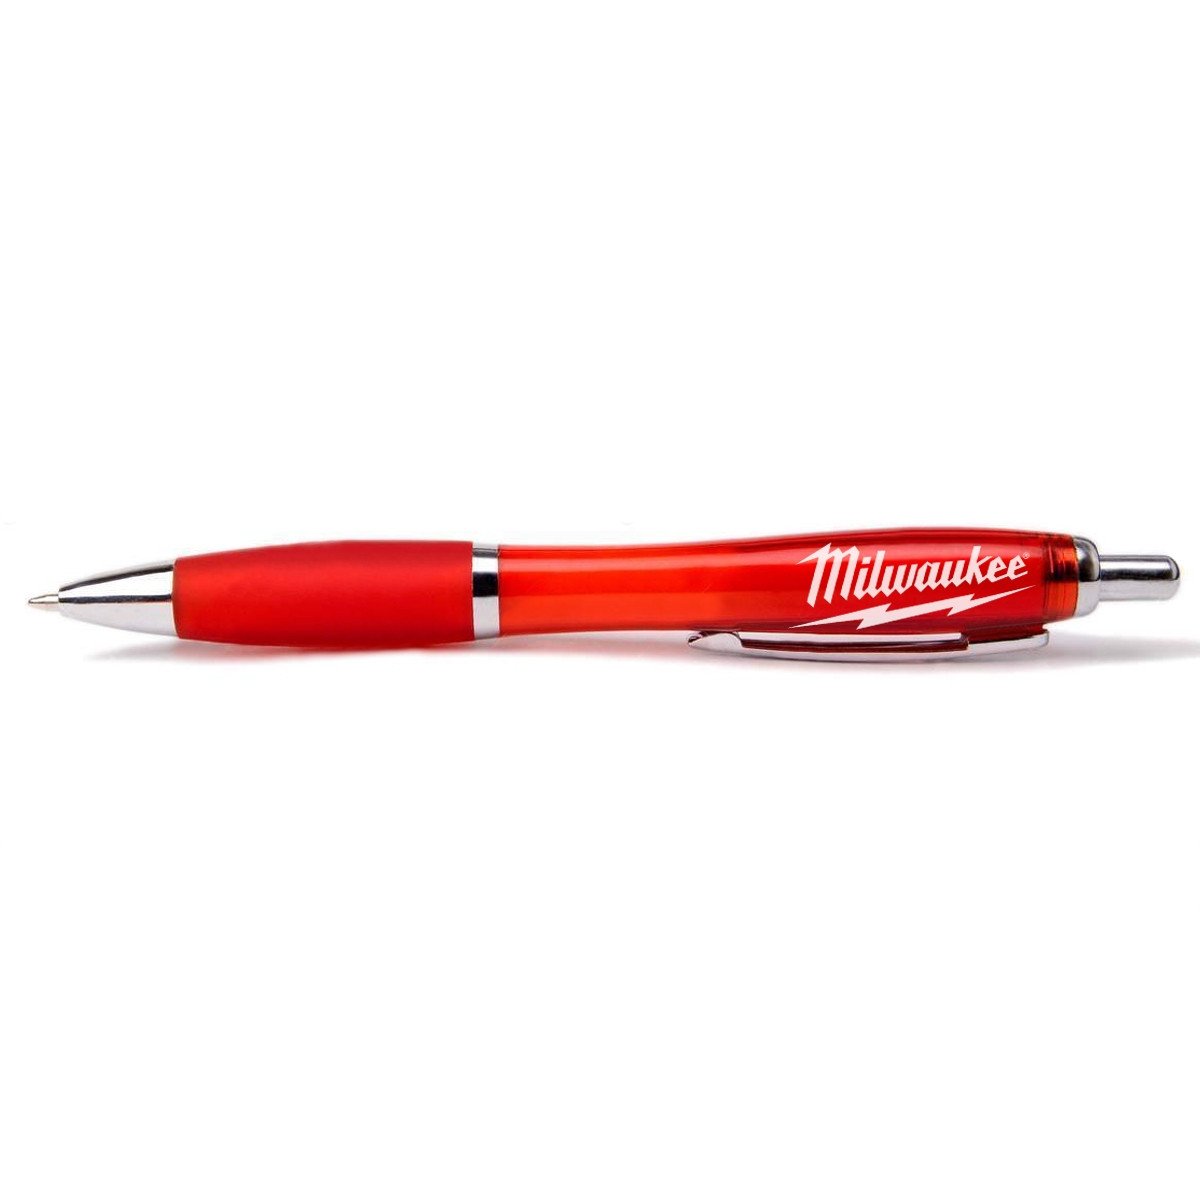 密尔沃基P2066带密尔沃基徽标的红笔